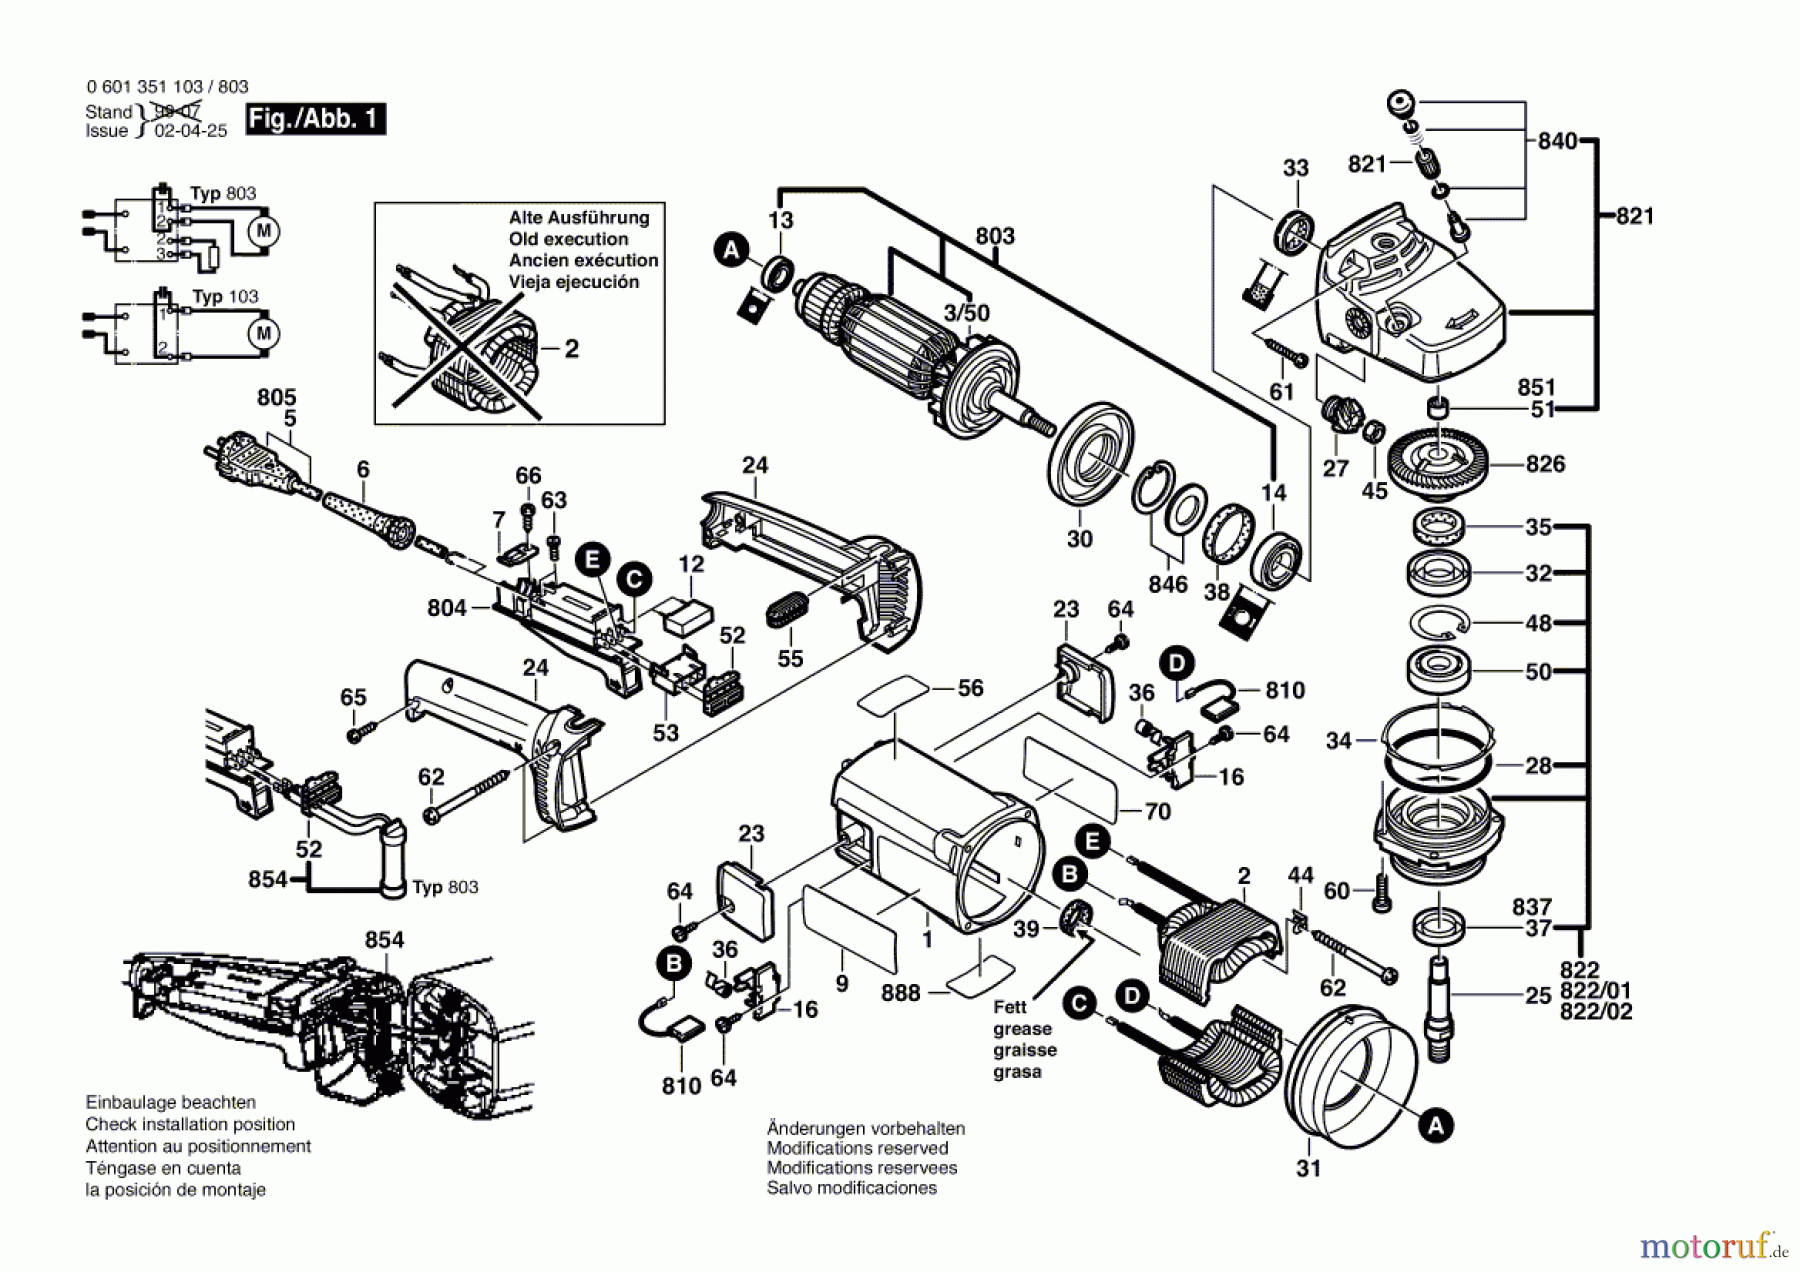  Bosch Werkzeug Winkelschleifer GWS 19-180 Seite 1